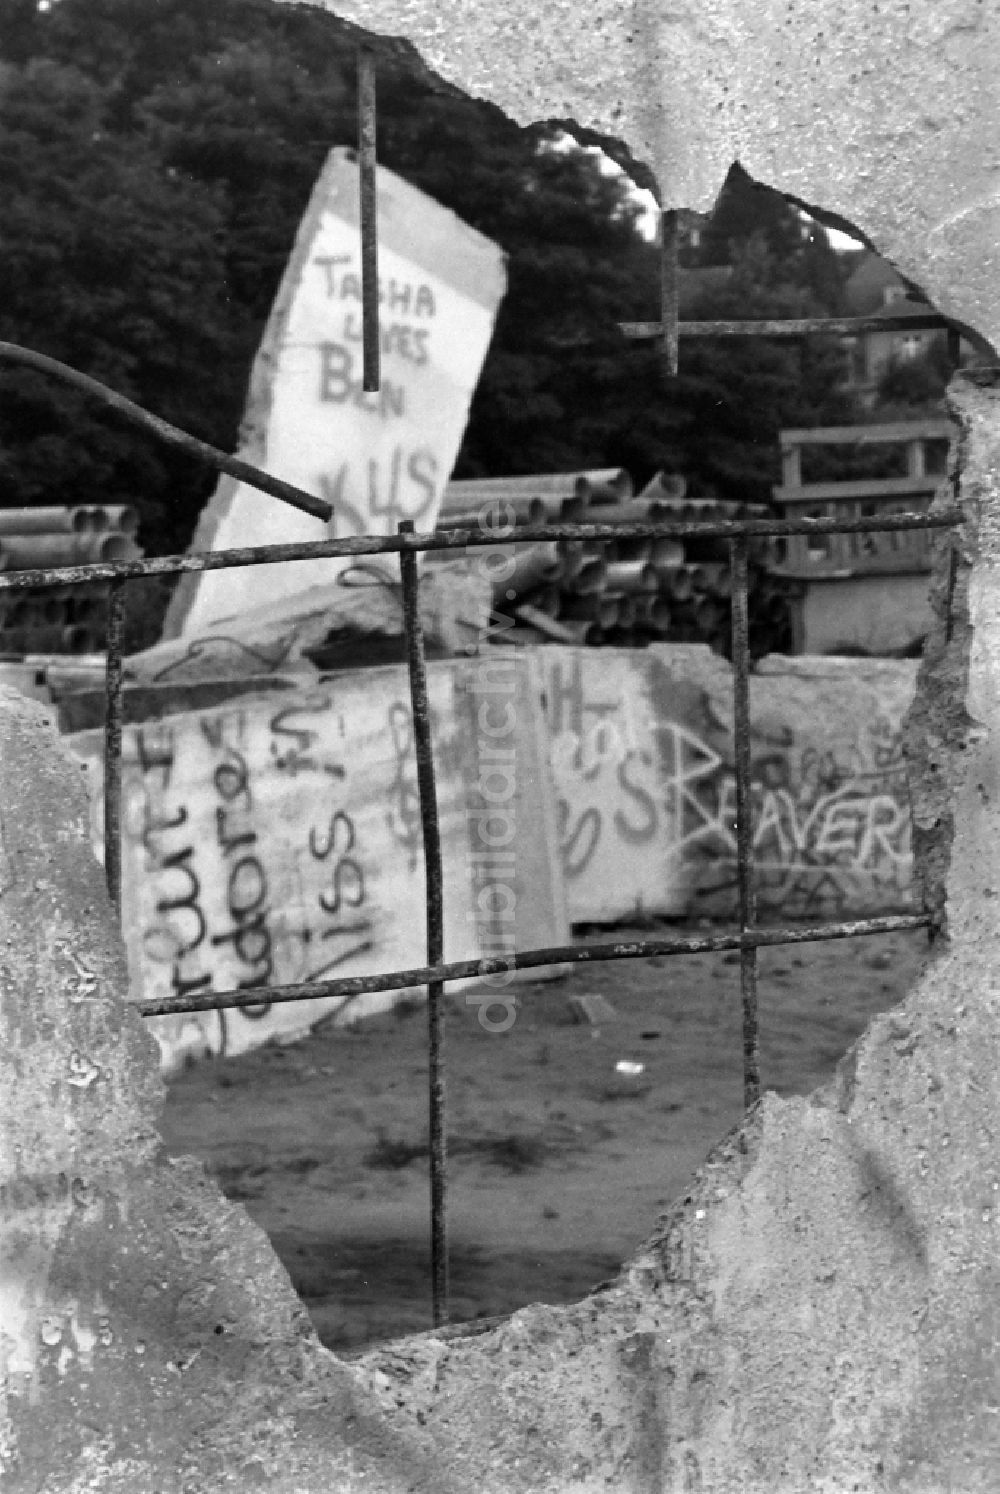 Berlin: Fragmente der verfallenden Grenzbefestigung und Mauer in Berlin auf dem Gebiet der ehemaligen DDR, Deutsche Demokratische Republik